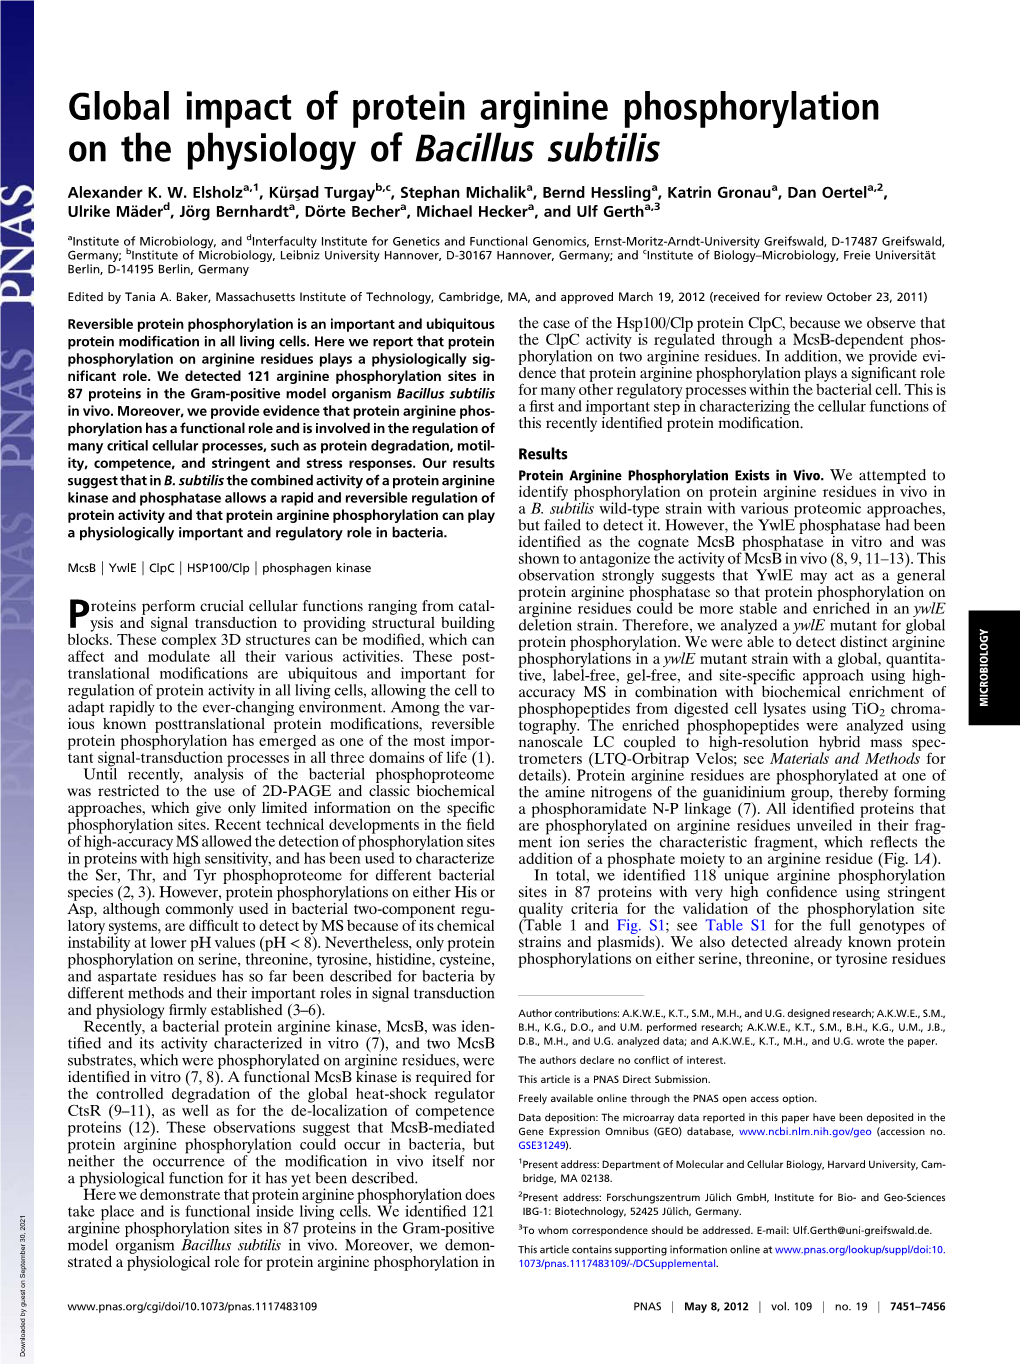 Global Impact of Protein Arginine Phosphorylation on the Physiology of Bacillus Subtilis